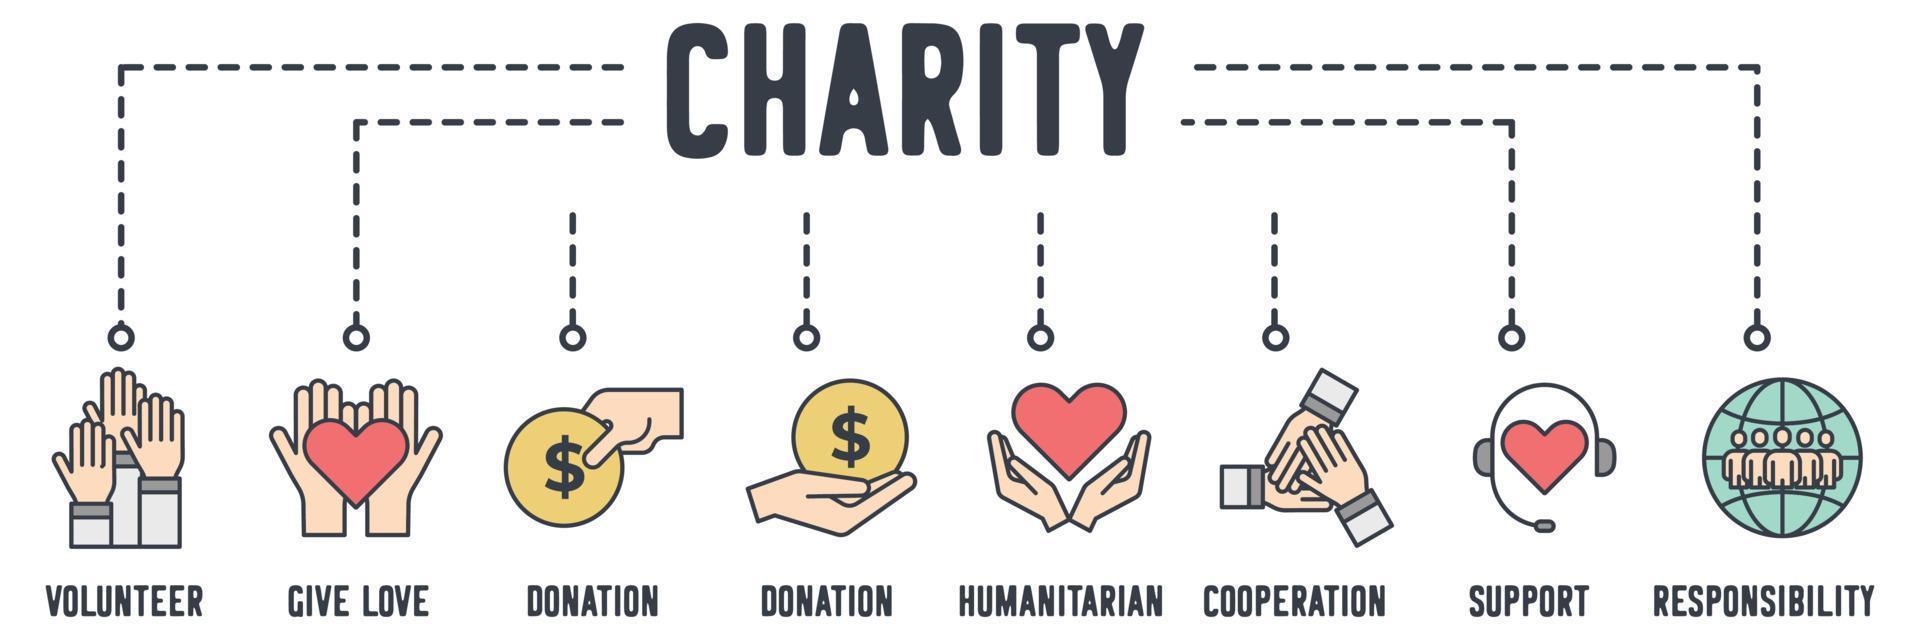 icône web de bannière de charité. bénévole, donner de l'amour, don, humanitaire, coopération, soutien, concept d'illustration vectorielle de responsabilité sociale. vecteur